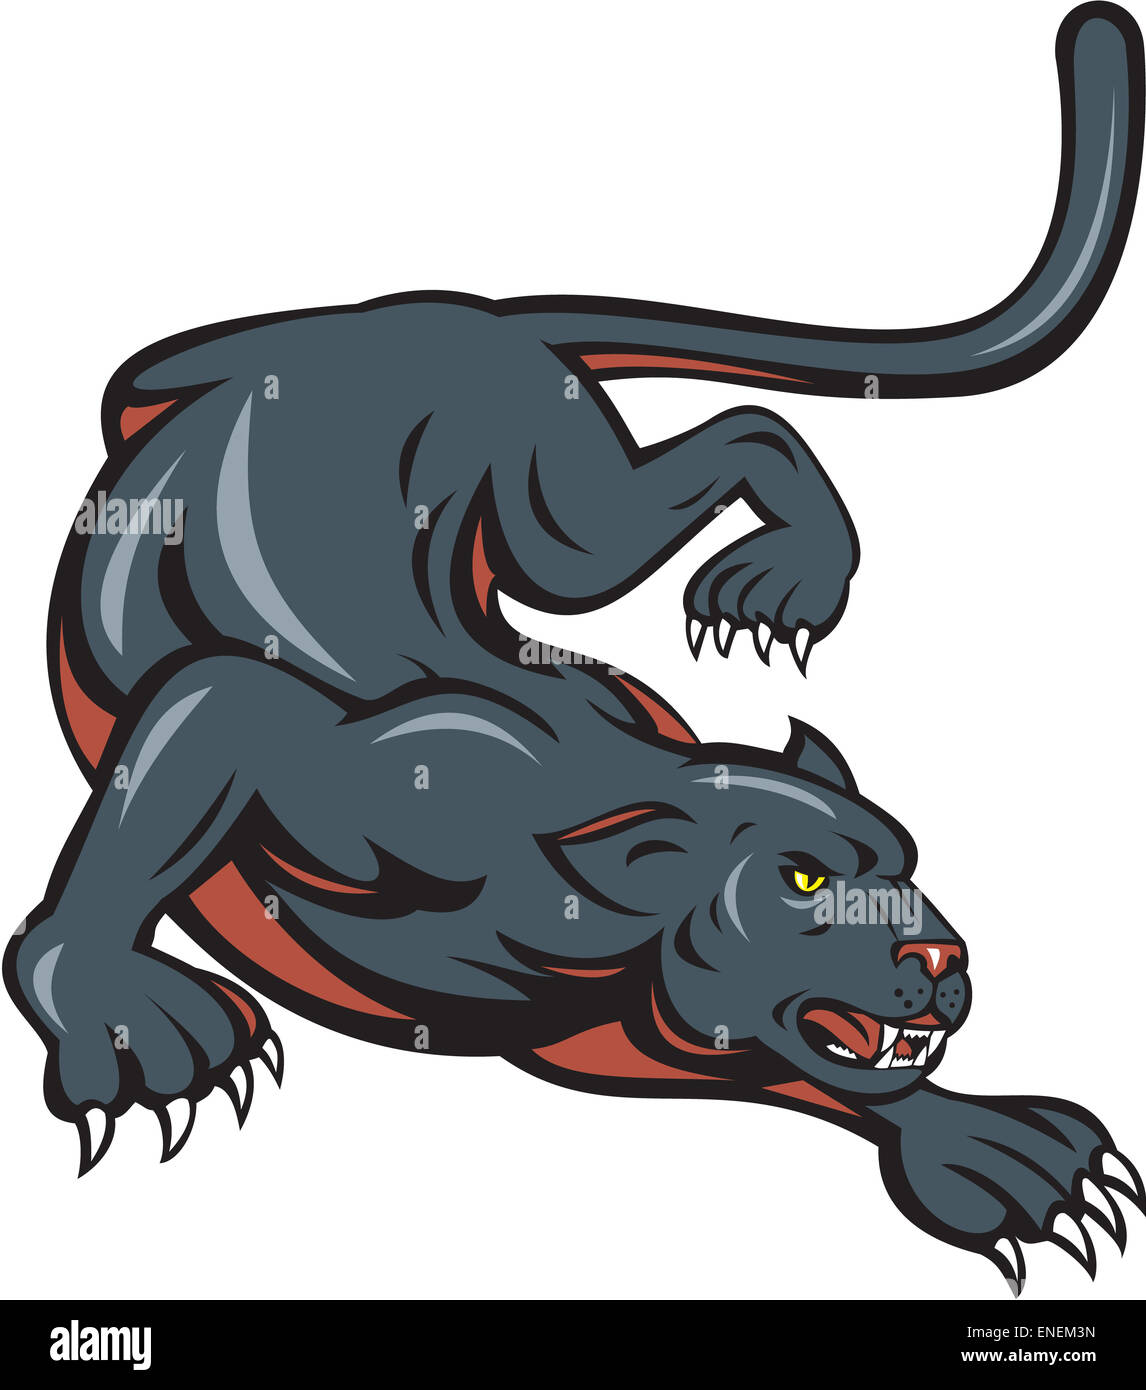 Cartoon style illustration de panthère noire big cat crouching situé sur fond blanc isolé. Banque D'Images